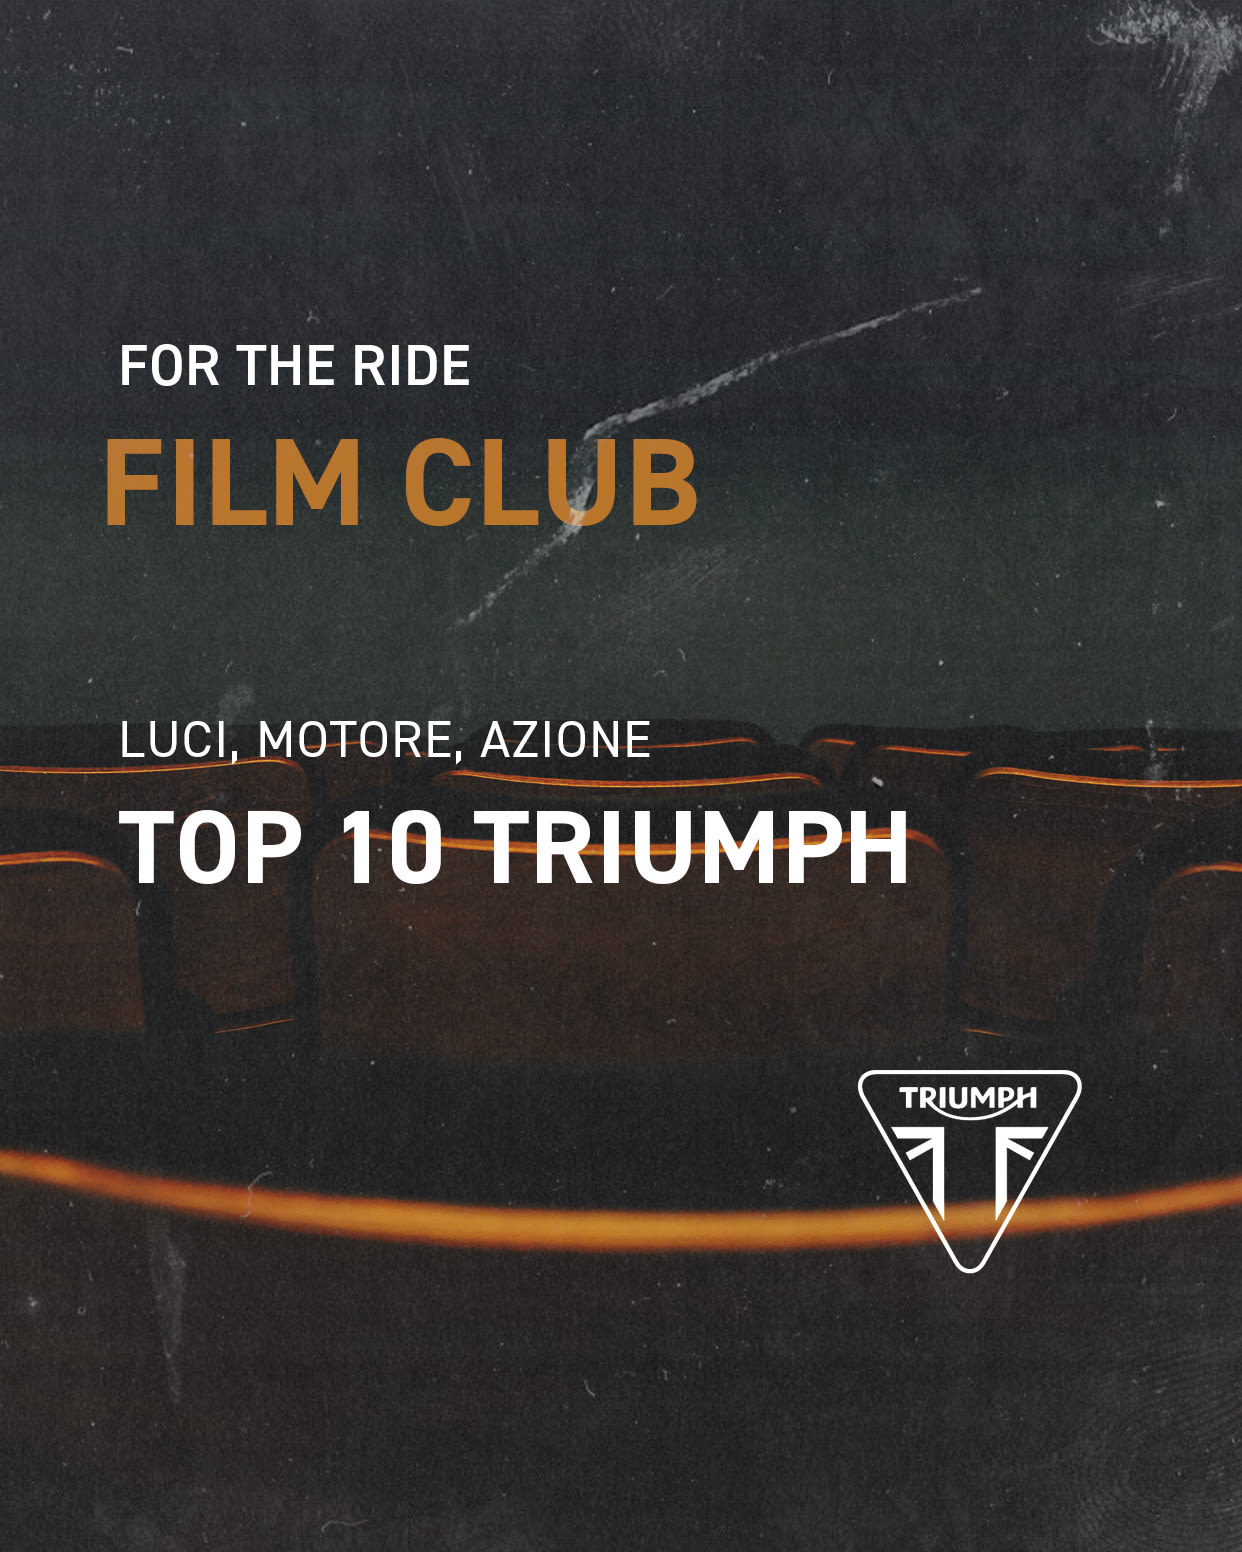 Triumph top 10 film appearances 